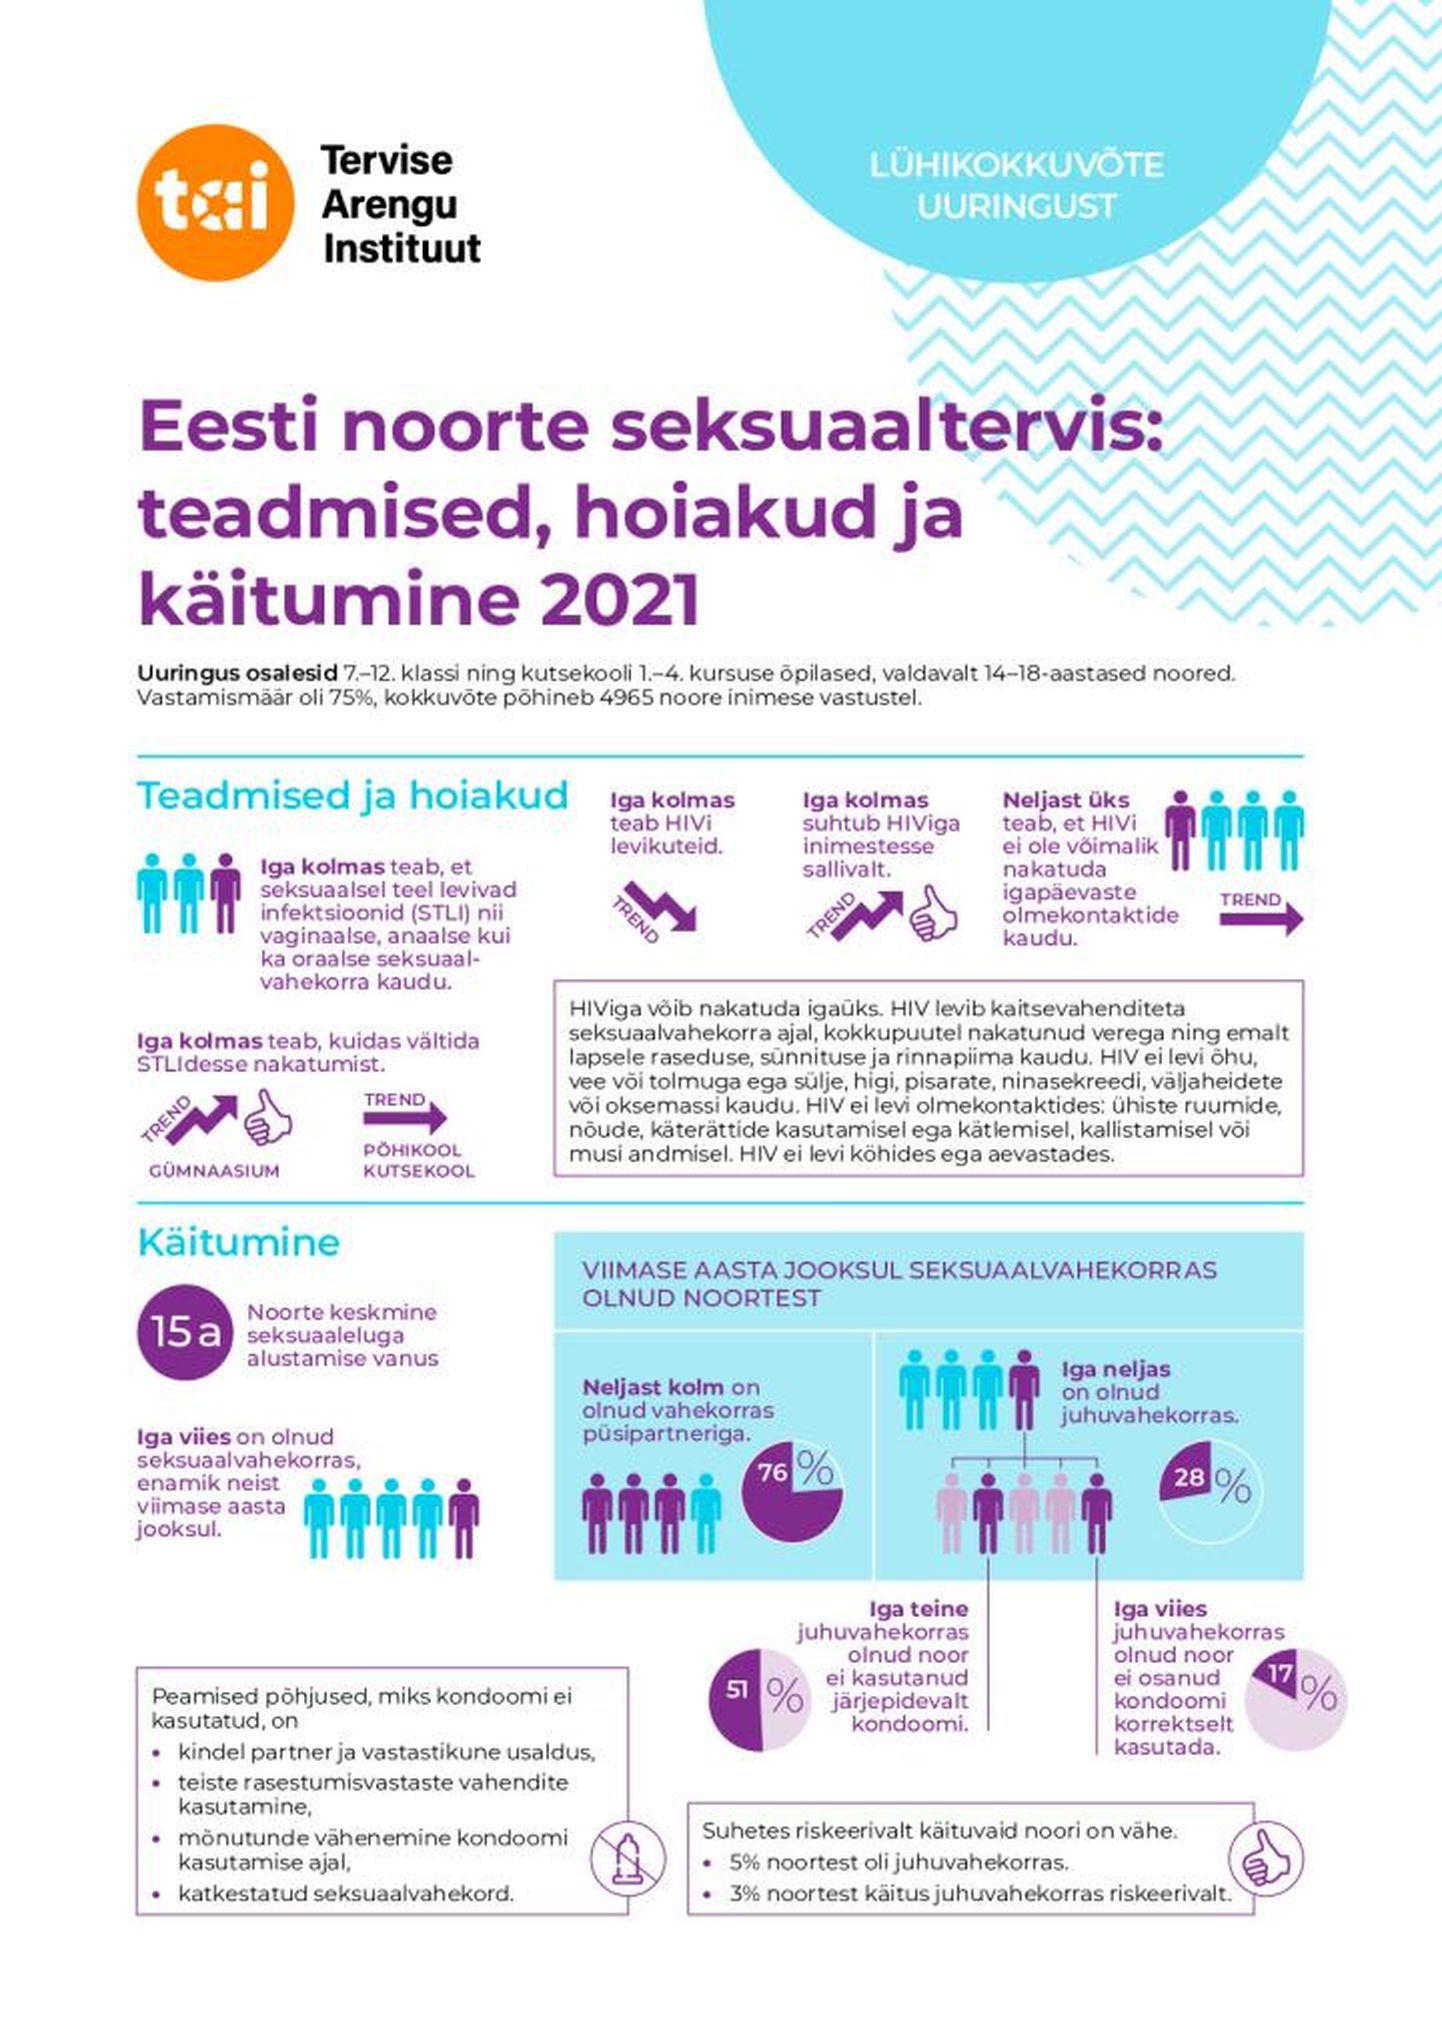 Eesti noorte seksuaaltervis: teadmised, hoiakud ja käitumine.